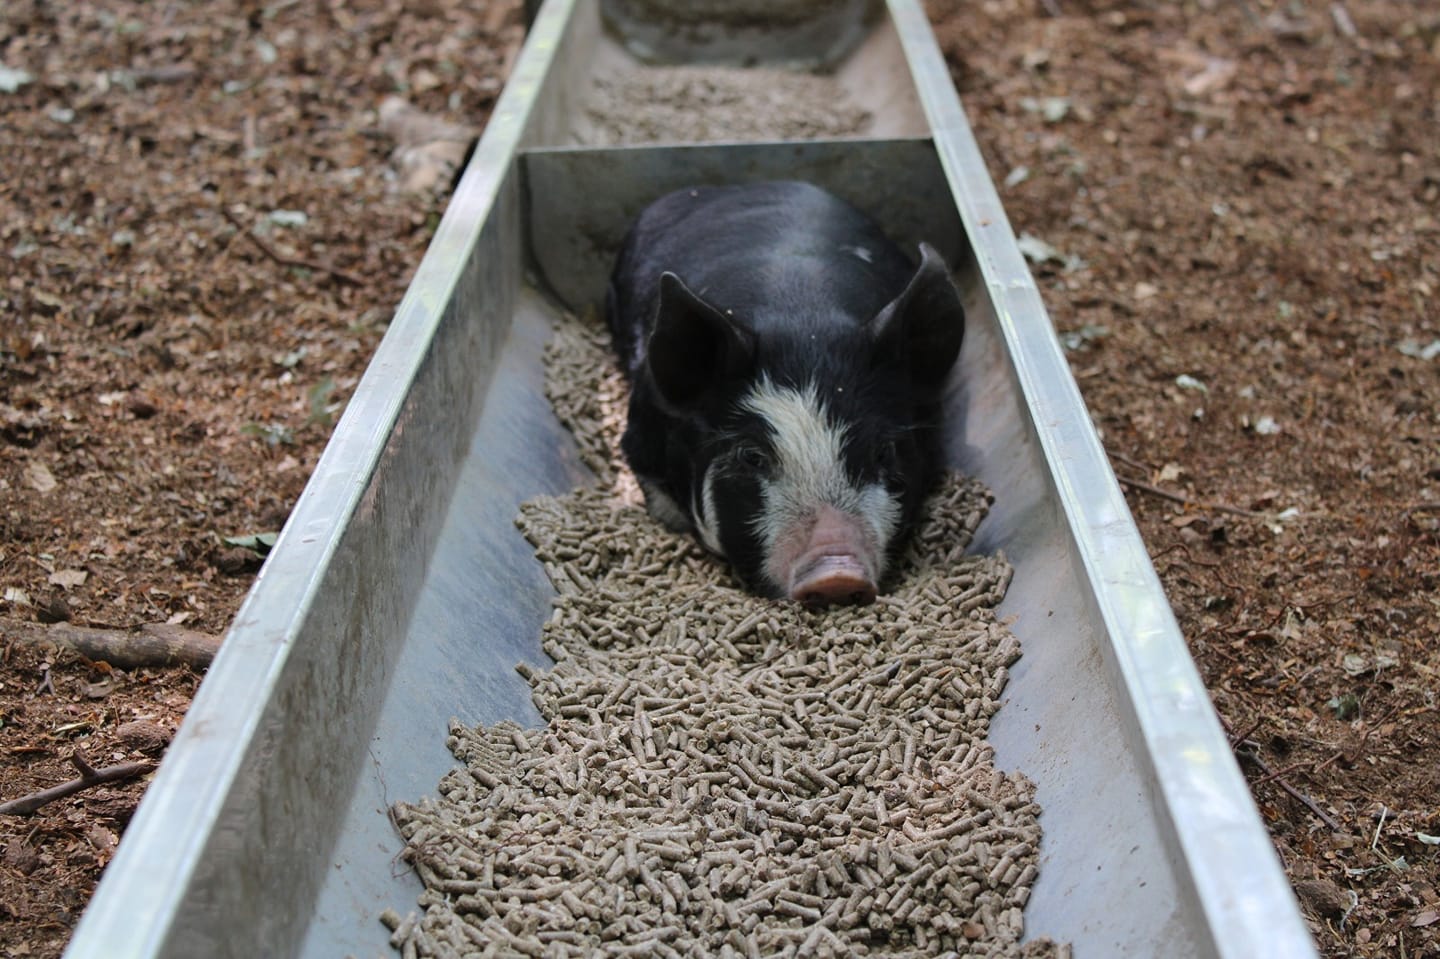 Repartidos por los Países Bajos, los propietarios de Buitengewone Varkens (Extraordinary Pigs) Stan Gloudemans y Josse Haarhuis tienen aproximadamente 20 ubicaciones en uso con cuidadores dedicados, siempre visibles para todos. Alimentan a los cerdos que viven en pequeños grupos familiares de manera responsable.